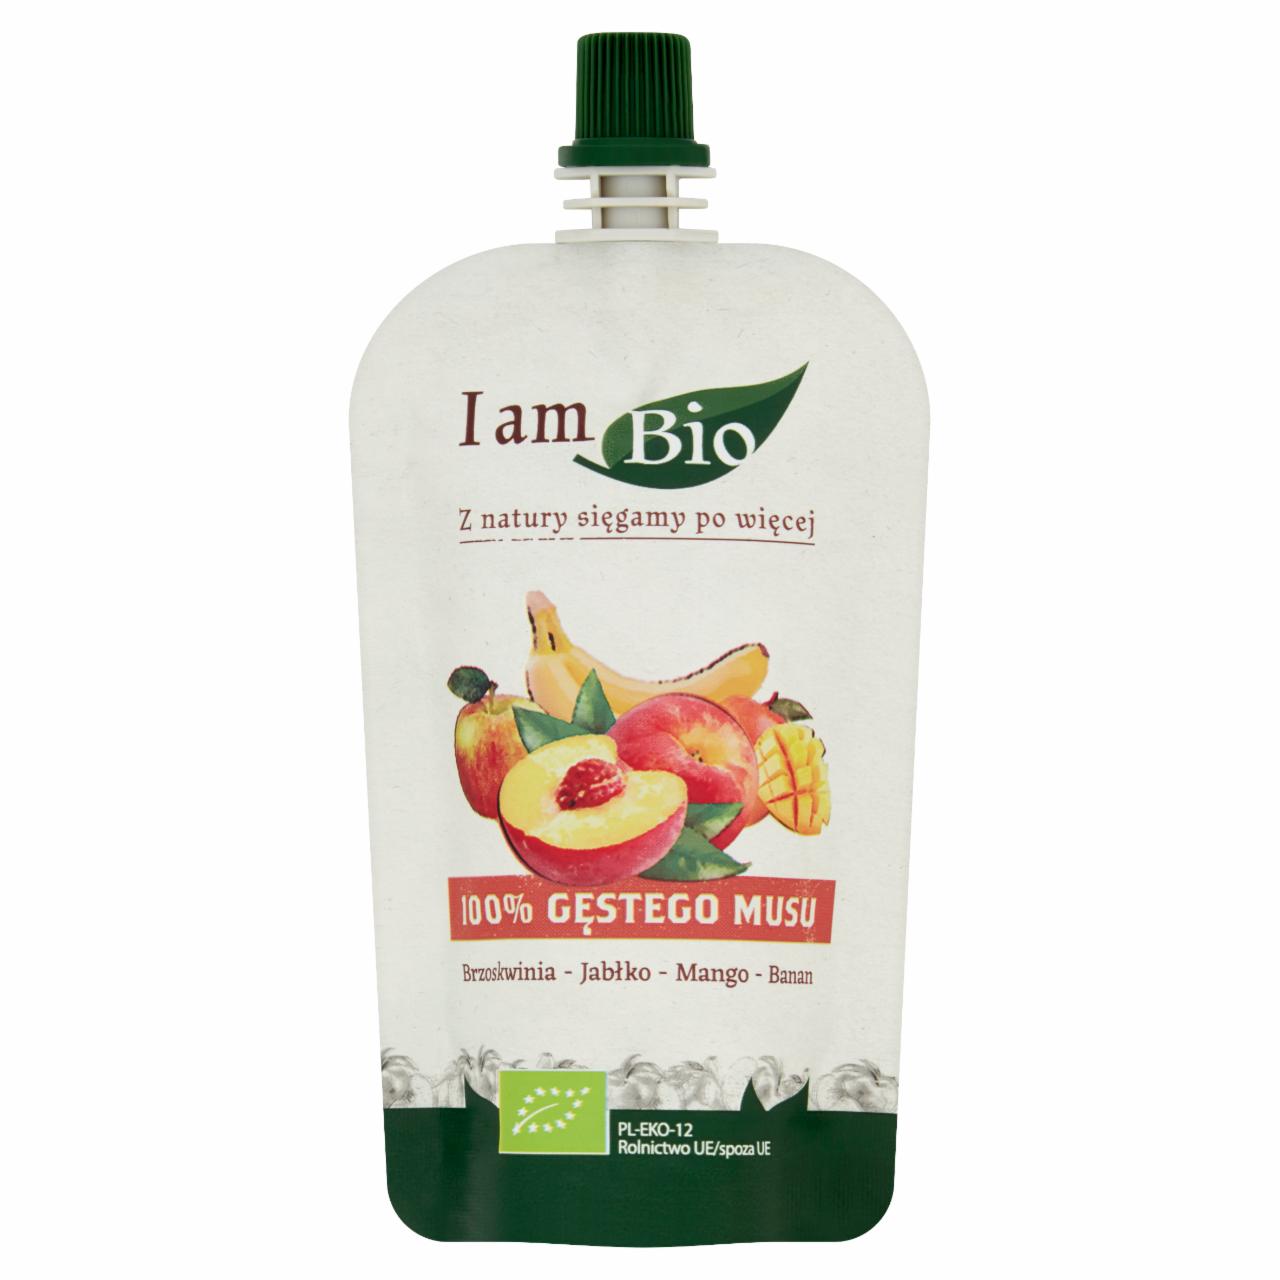 Zdjęcia - I am Bio Przecier owocowy z sokiem jabłkowym brzoskwinia-jabłko-mango-banan